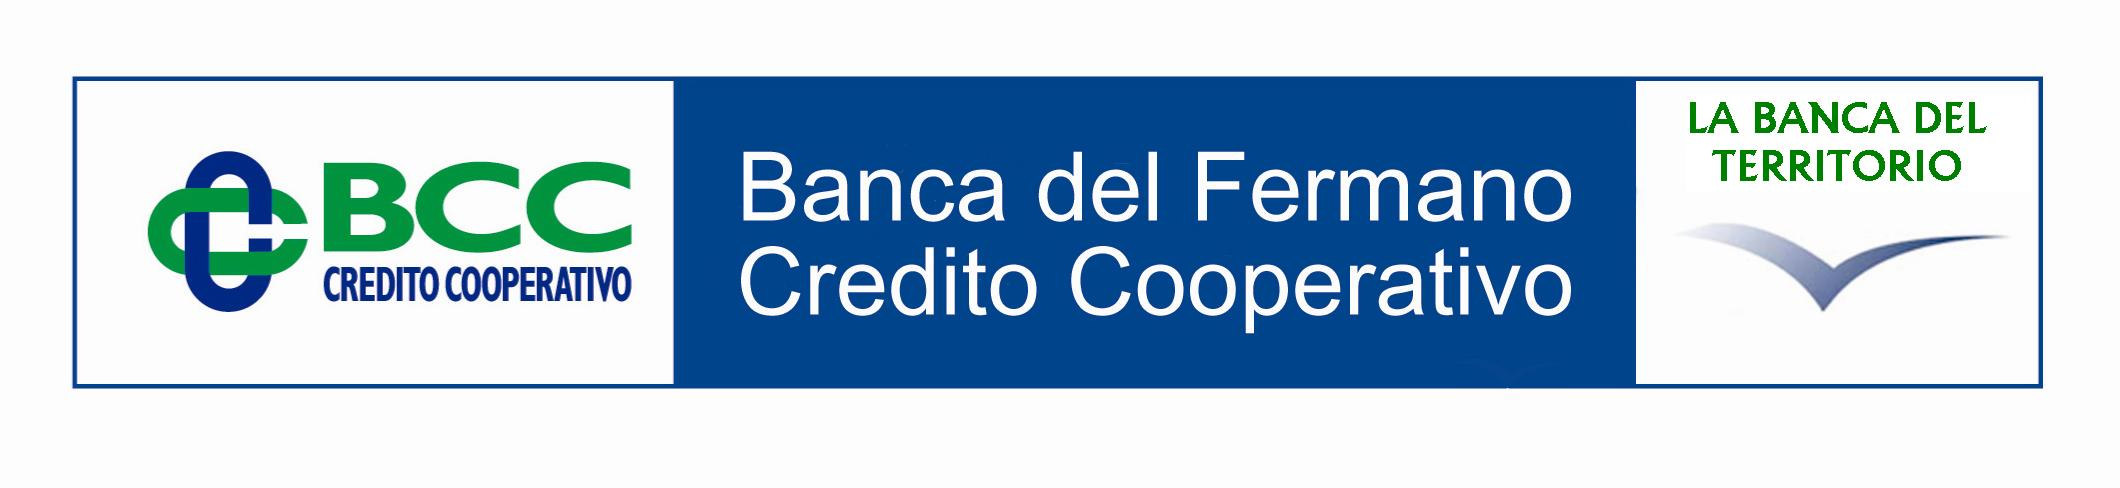 Banca del Fermano Credito Cooperativo Soc. Cooperativa Sede Sociale Viale Trento nr. 72 Fermo Fm Iscritta all Albo delle Banche al n.